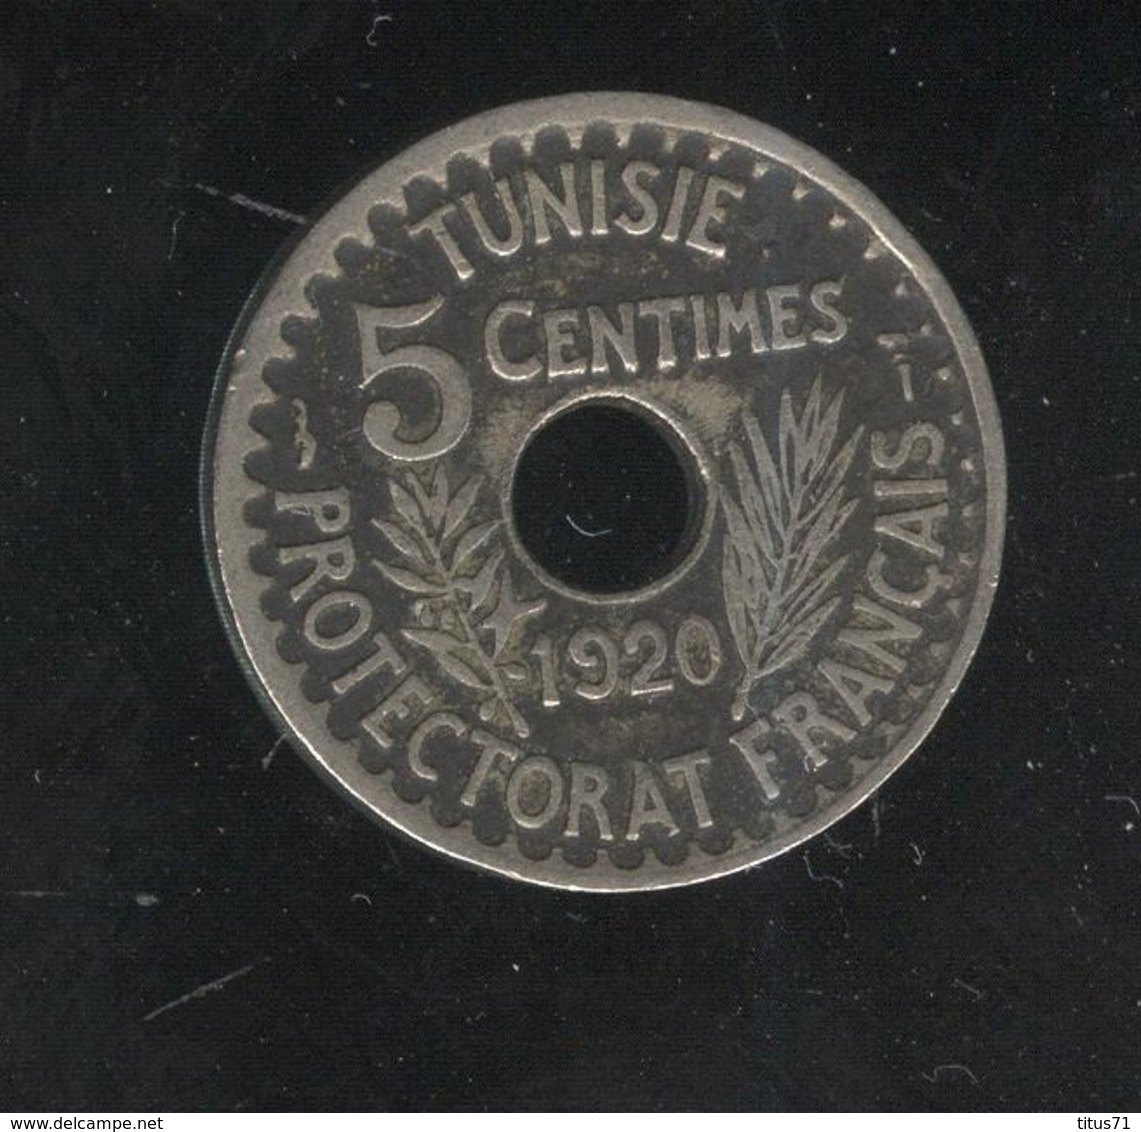 5 Centimes Tunisie 1920 Grand Module Protectorat Français - Tunisia